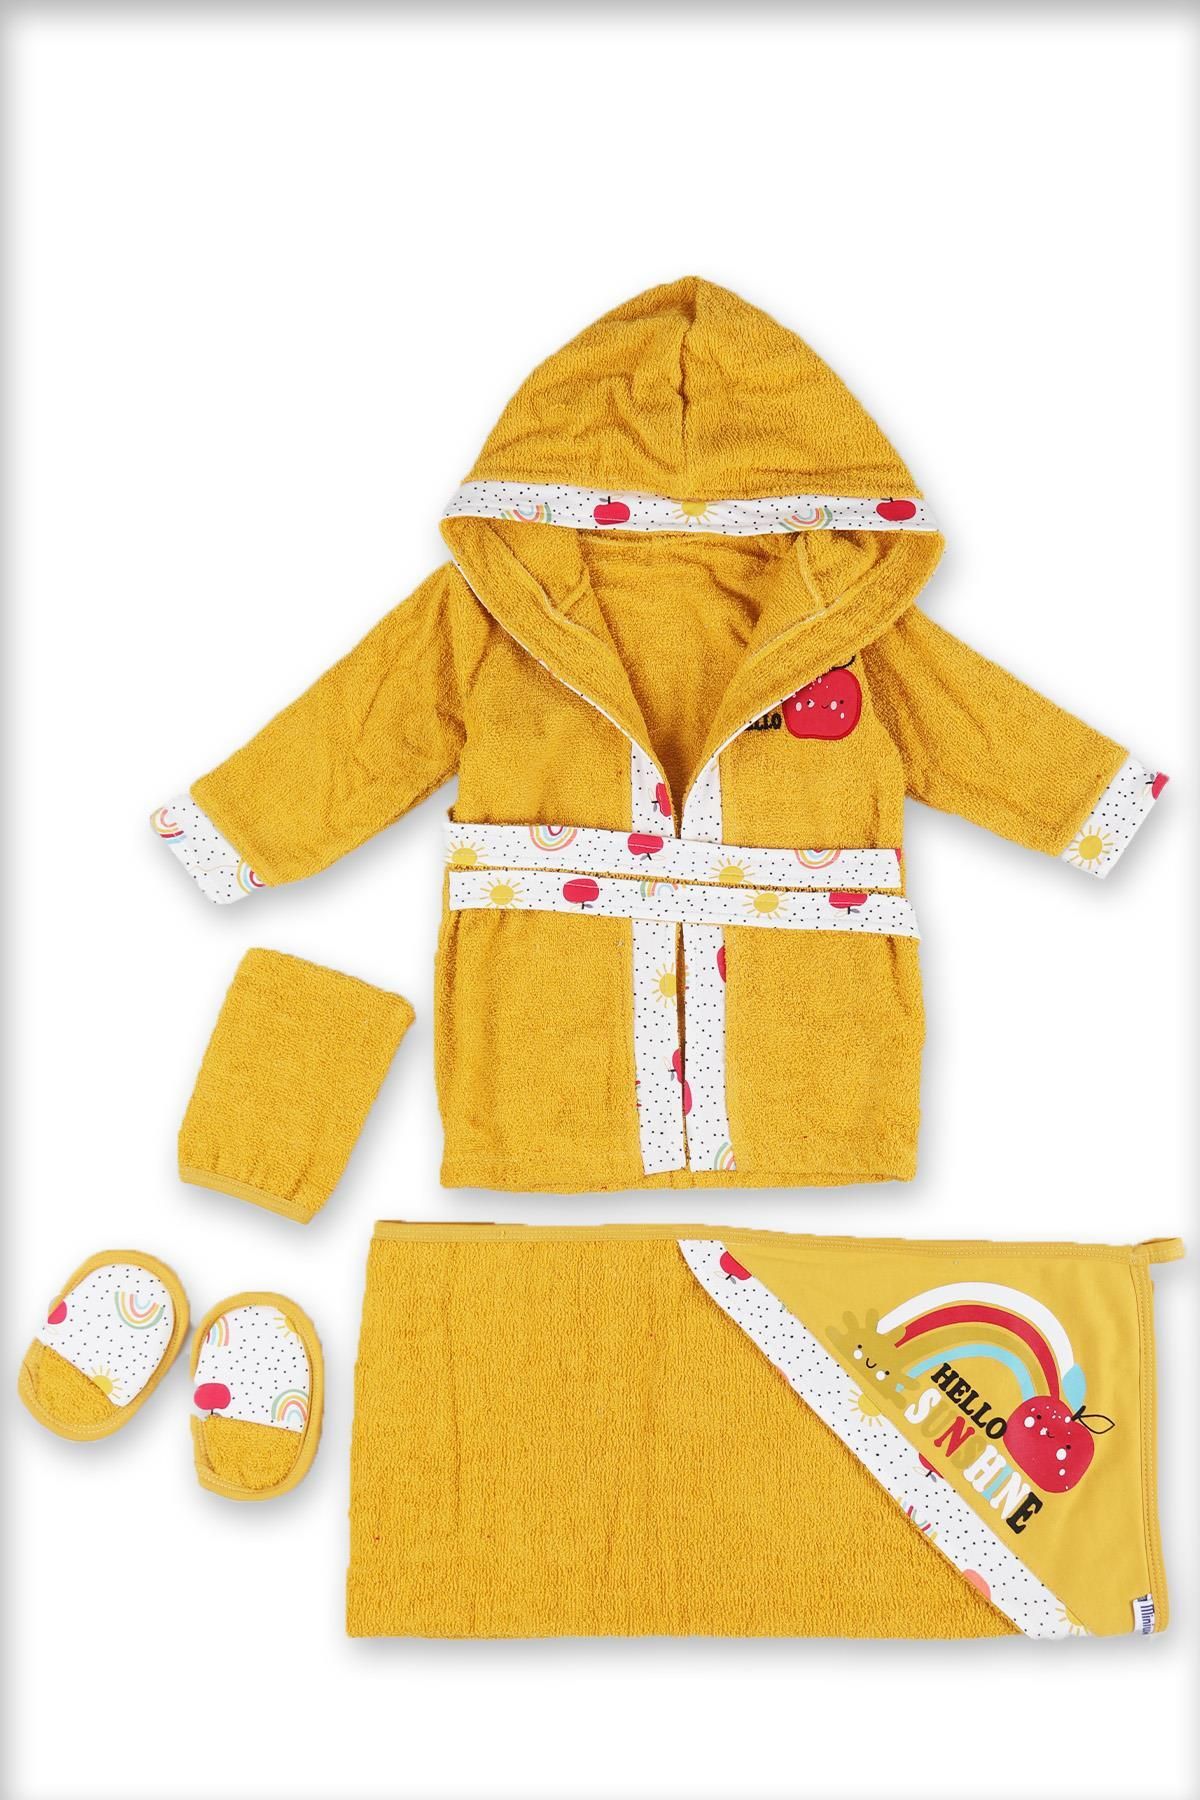 Mızıkçı MiniWorld Sarı Unisex Bebek Hello Sunshine Baskılı Elma Nakışlı Havlu/Bornoz